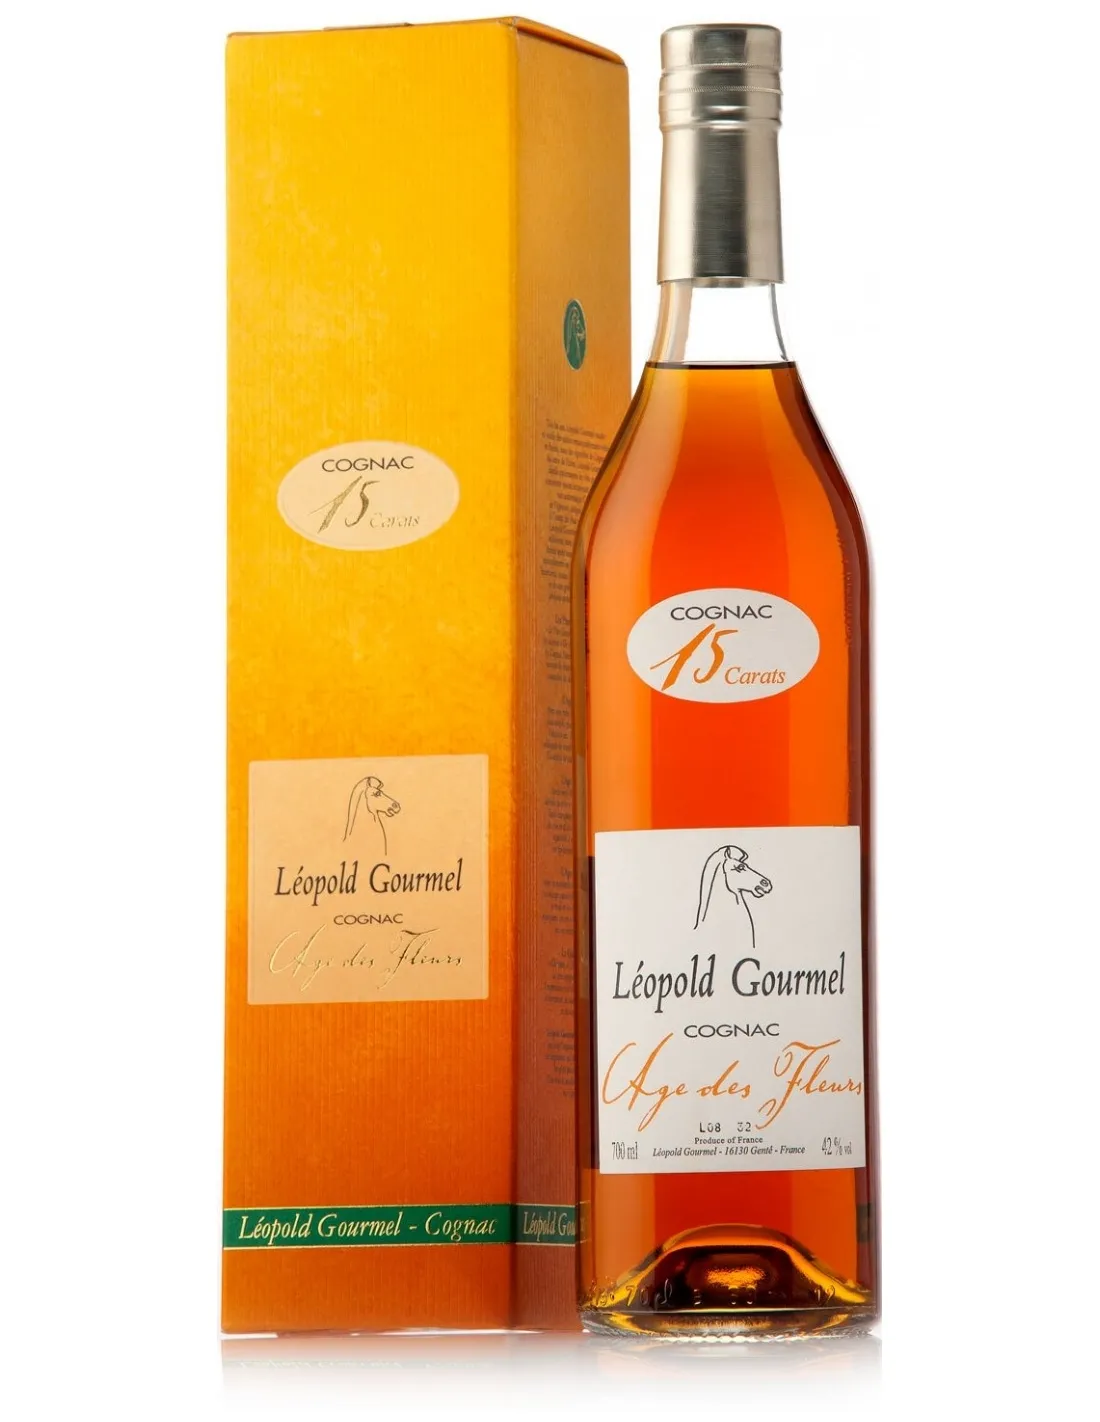 Cognac 20 Carats Age des Fleres - Leopold Gourmel (astuccio)